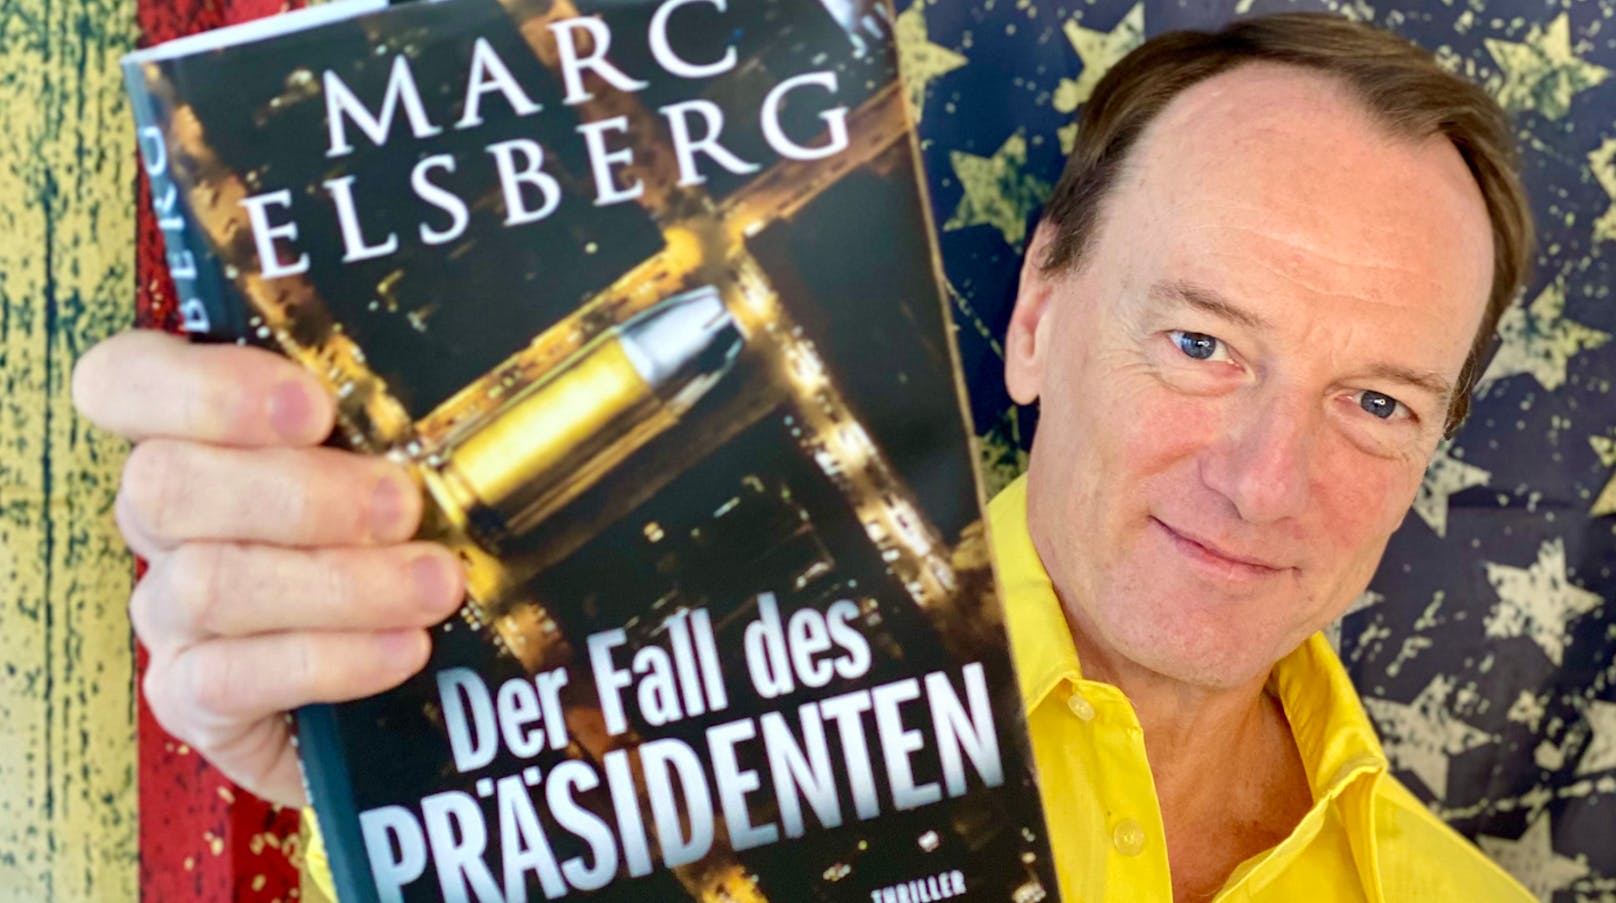 Marc Elsberg mit seinem neuen Thriller "Der Fall des Präsidenten"